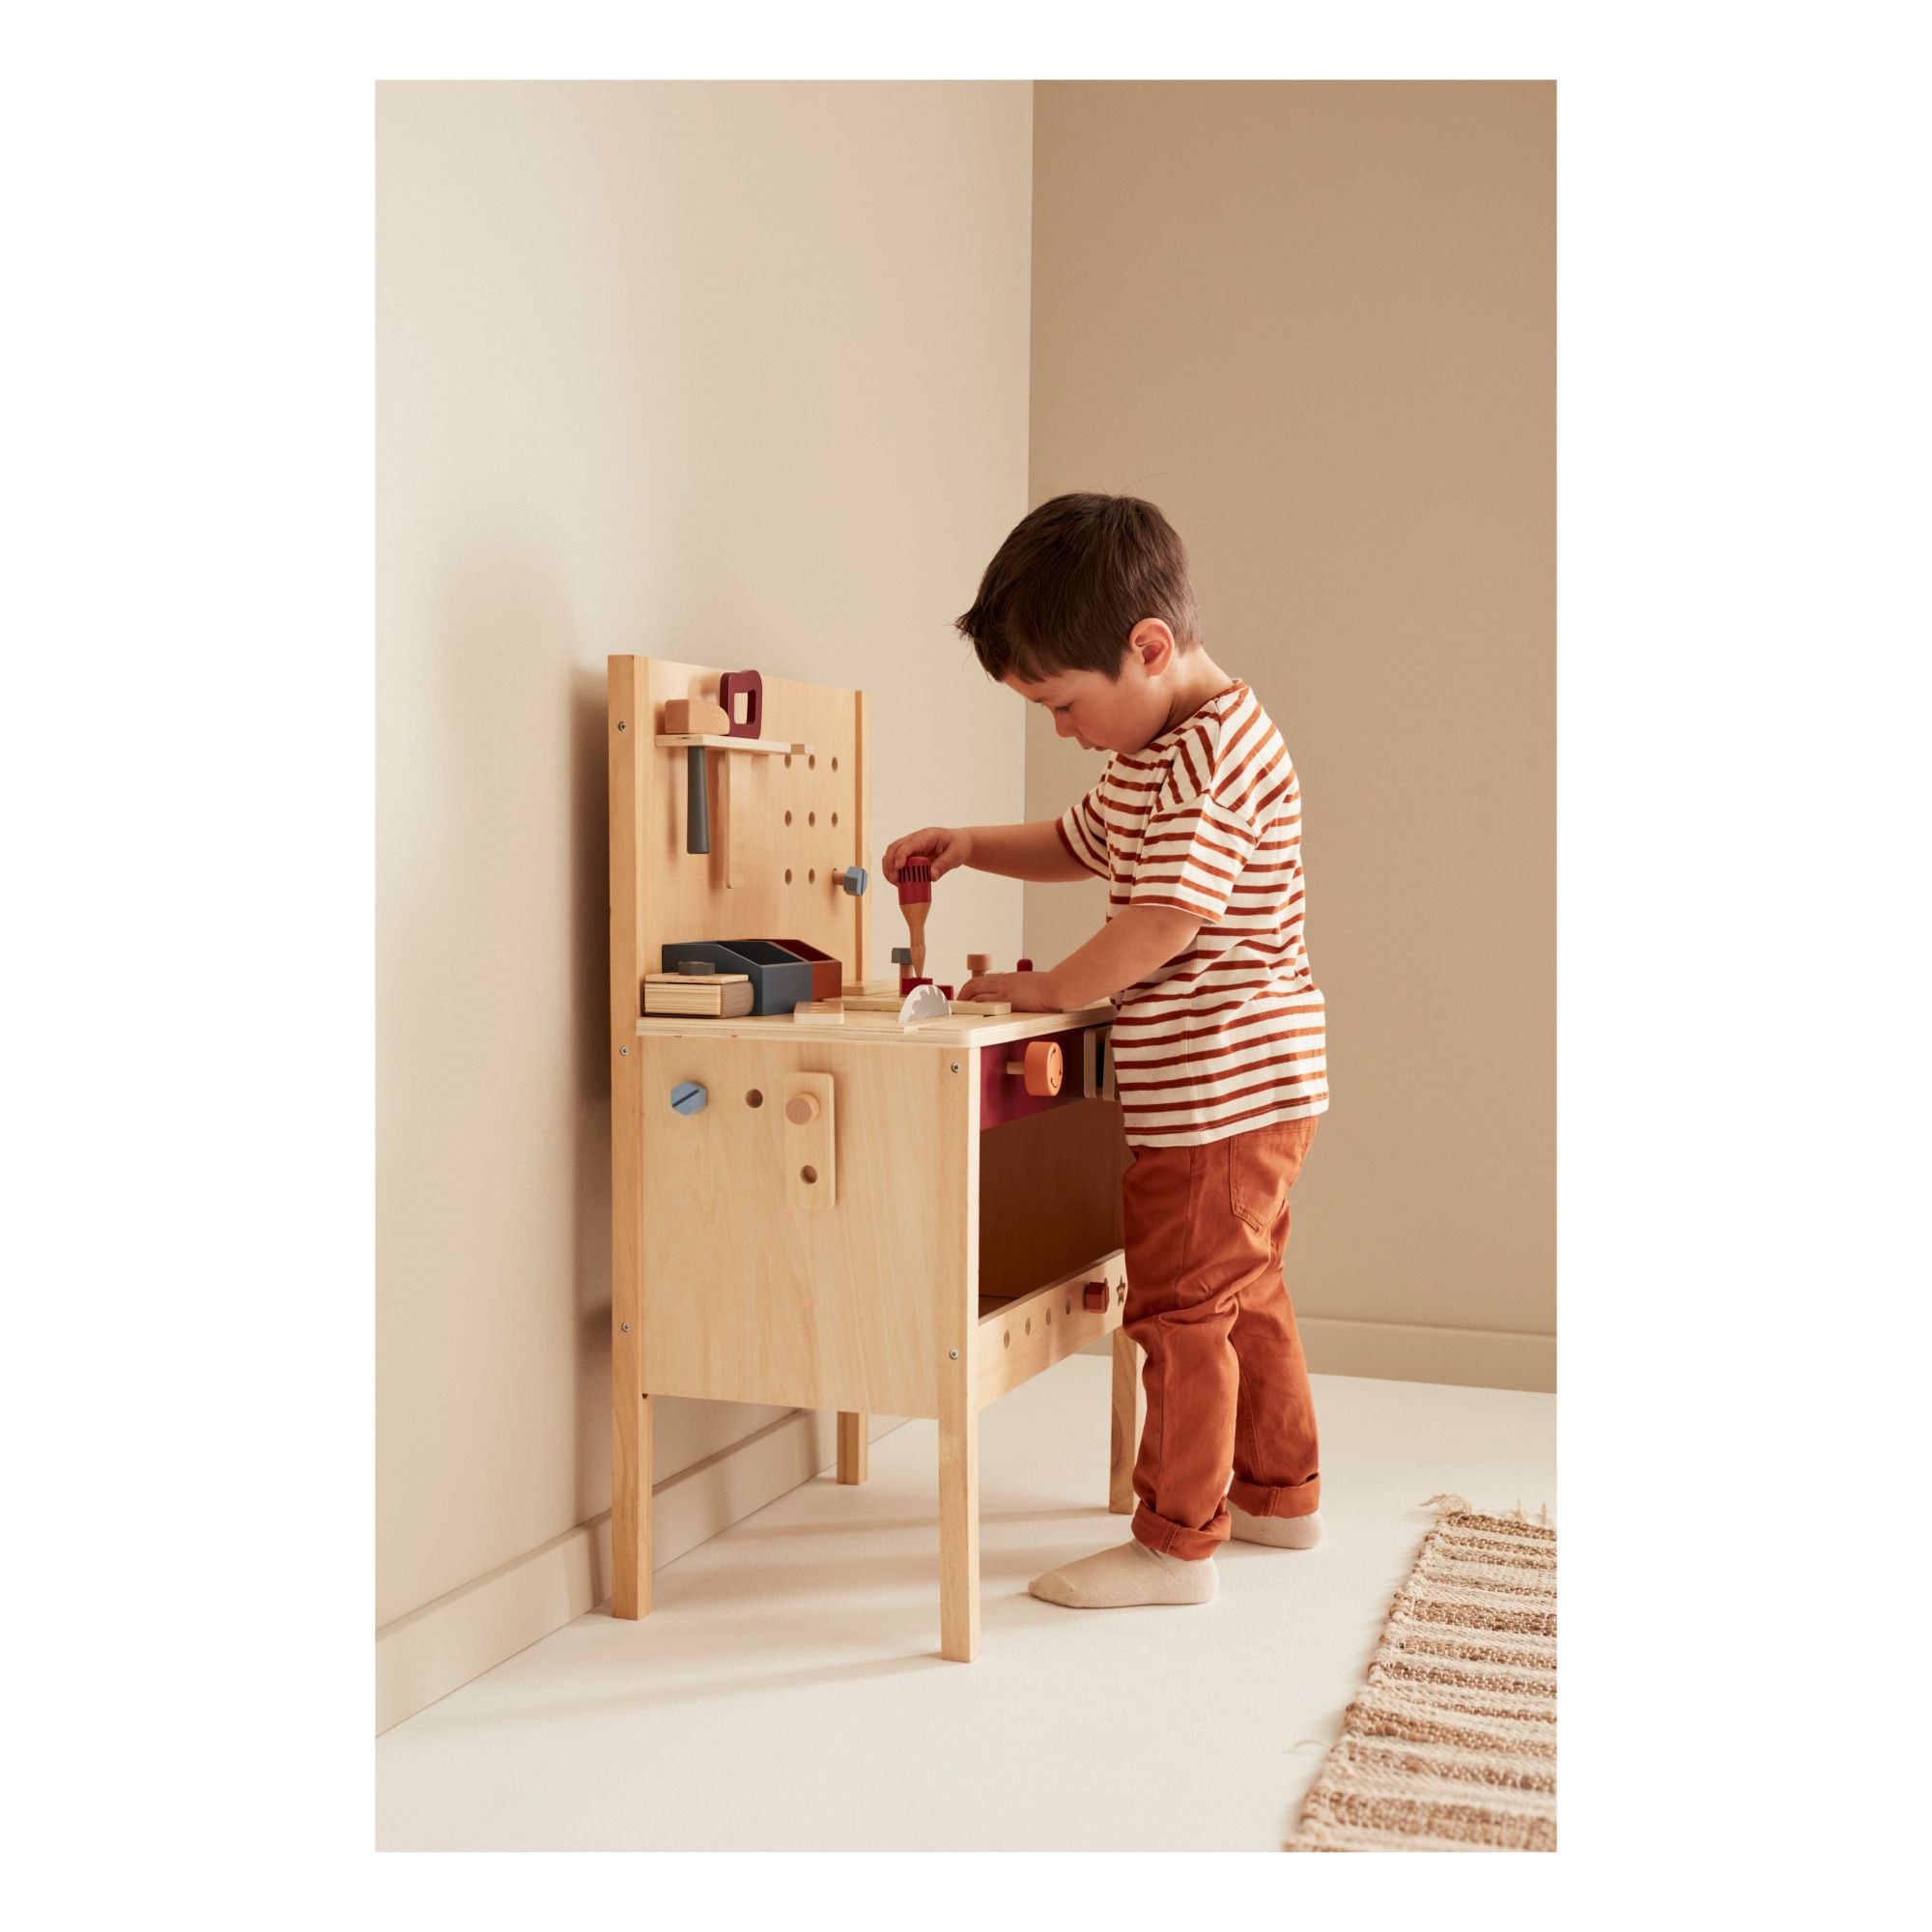 Kid's Concept - Etabli de bricolage en bois et ses accessoires